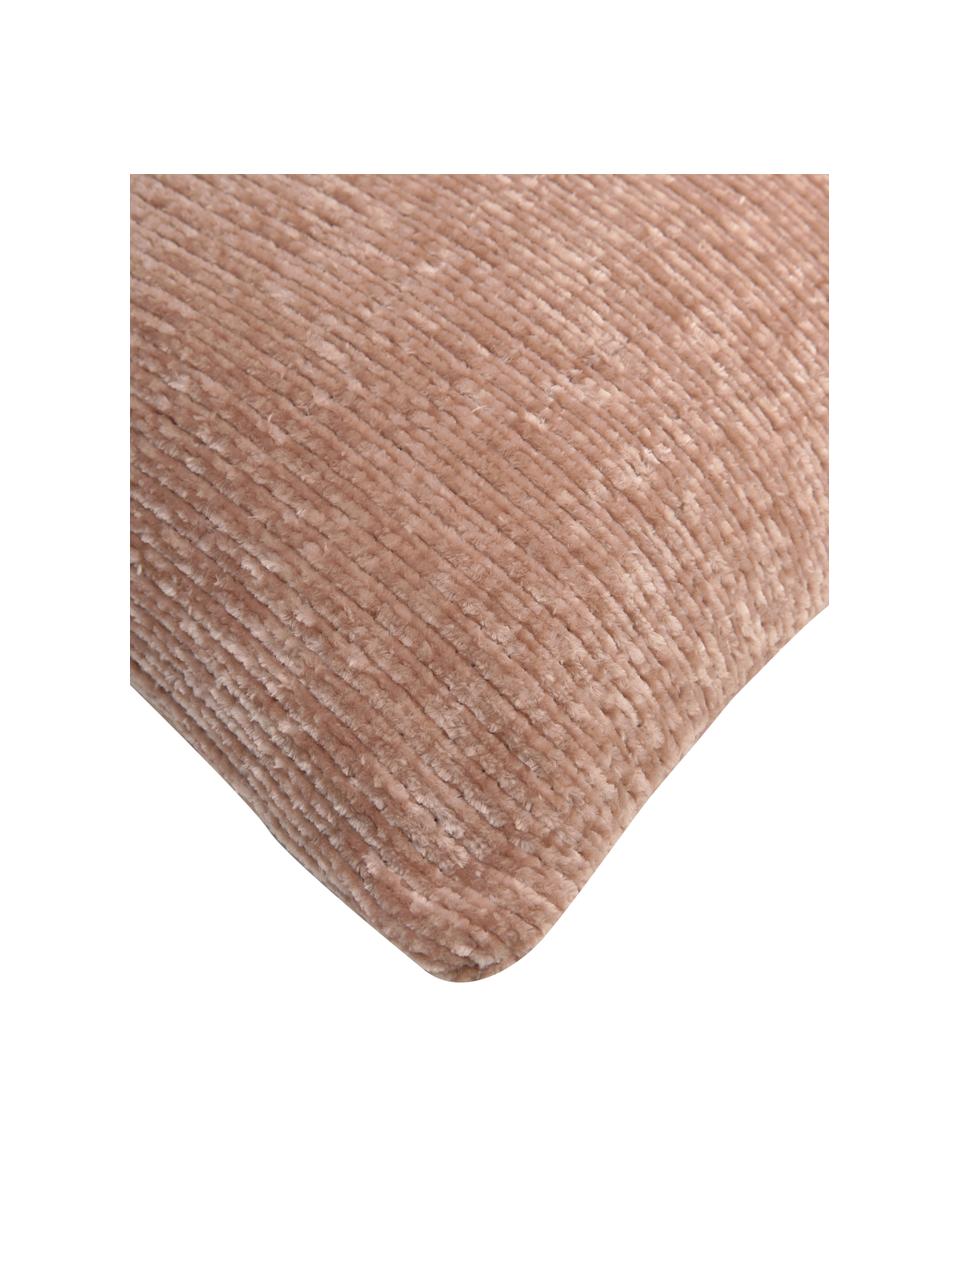 Federa arredo morbida in ciniglia rosa cipria Beckett, 100% poliestere, Rosa cipria, Larg. 45 x Lung. 45 cm